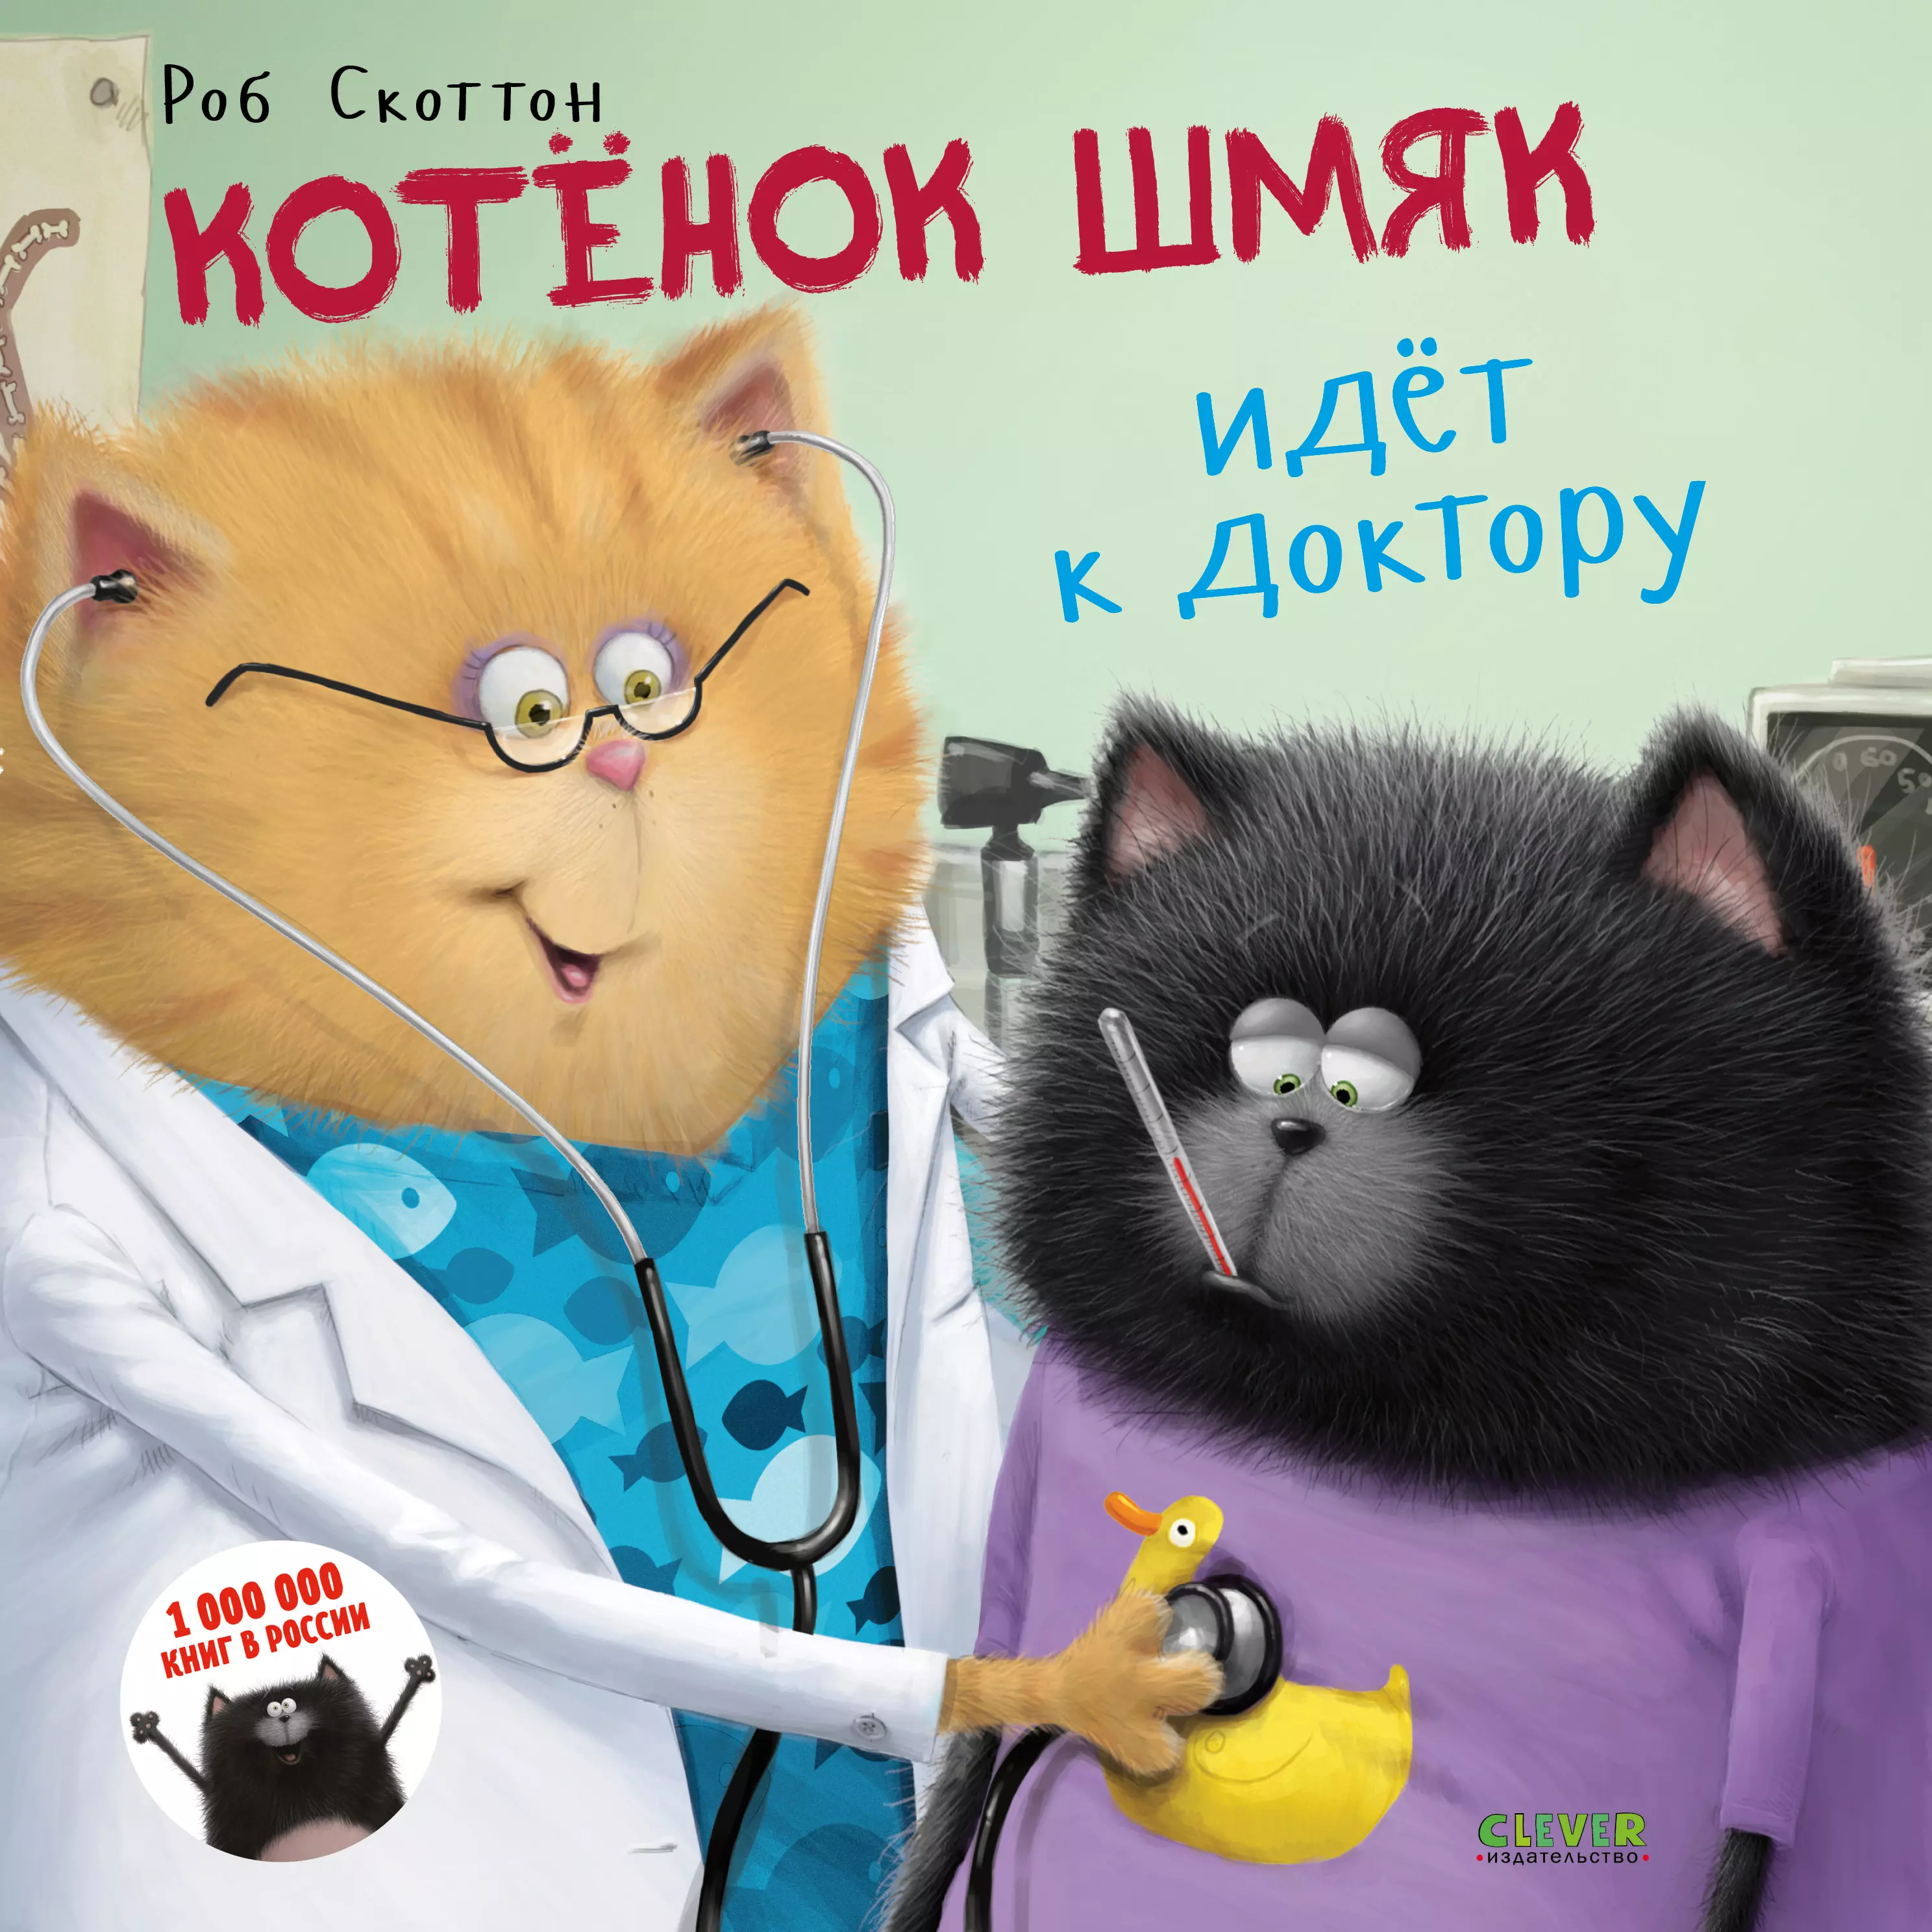 Скоттон Роб Котенок Шмяк идет к доктору к котенок